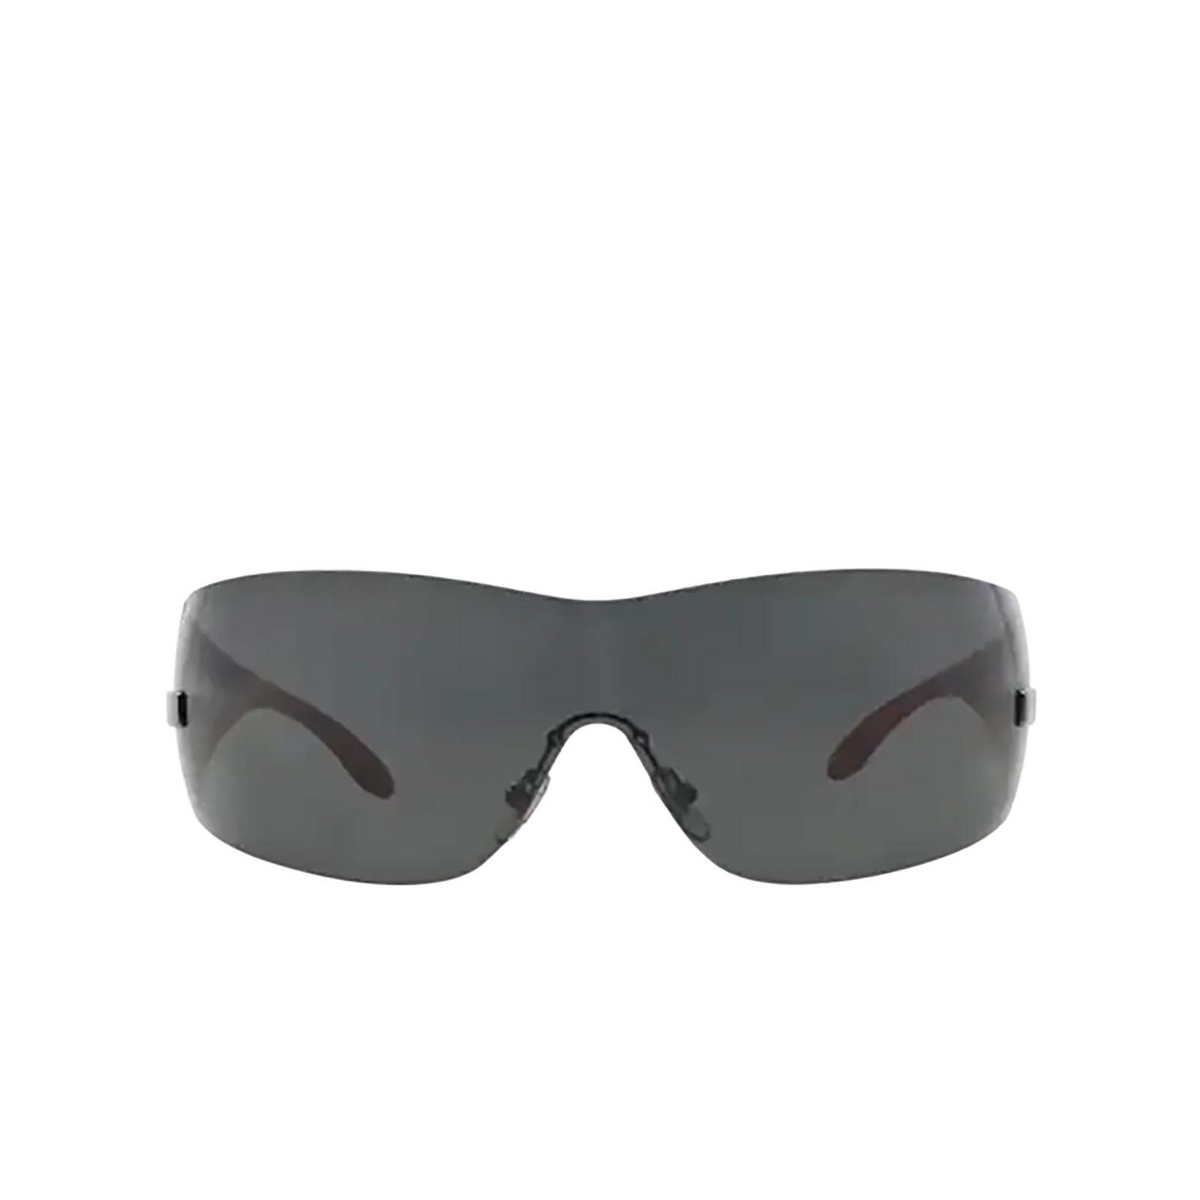 Versace® Sport Sunglasses: VE2054 color Gunmetal 100187 - front view.